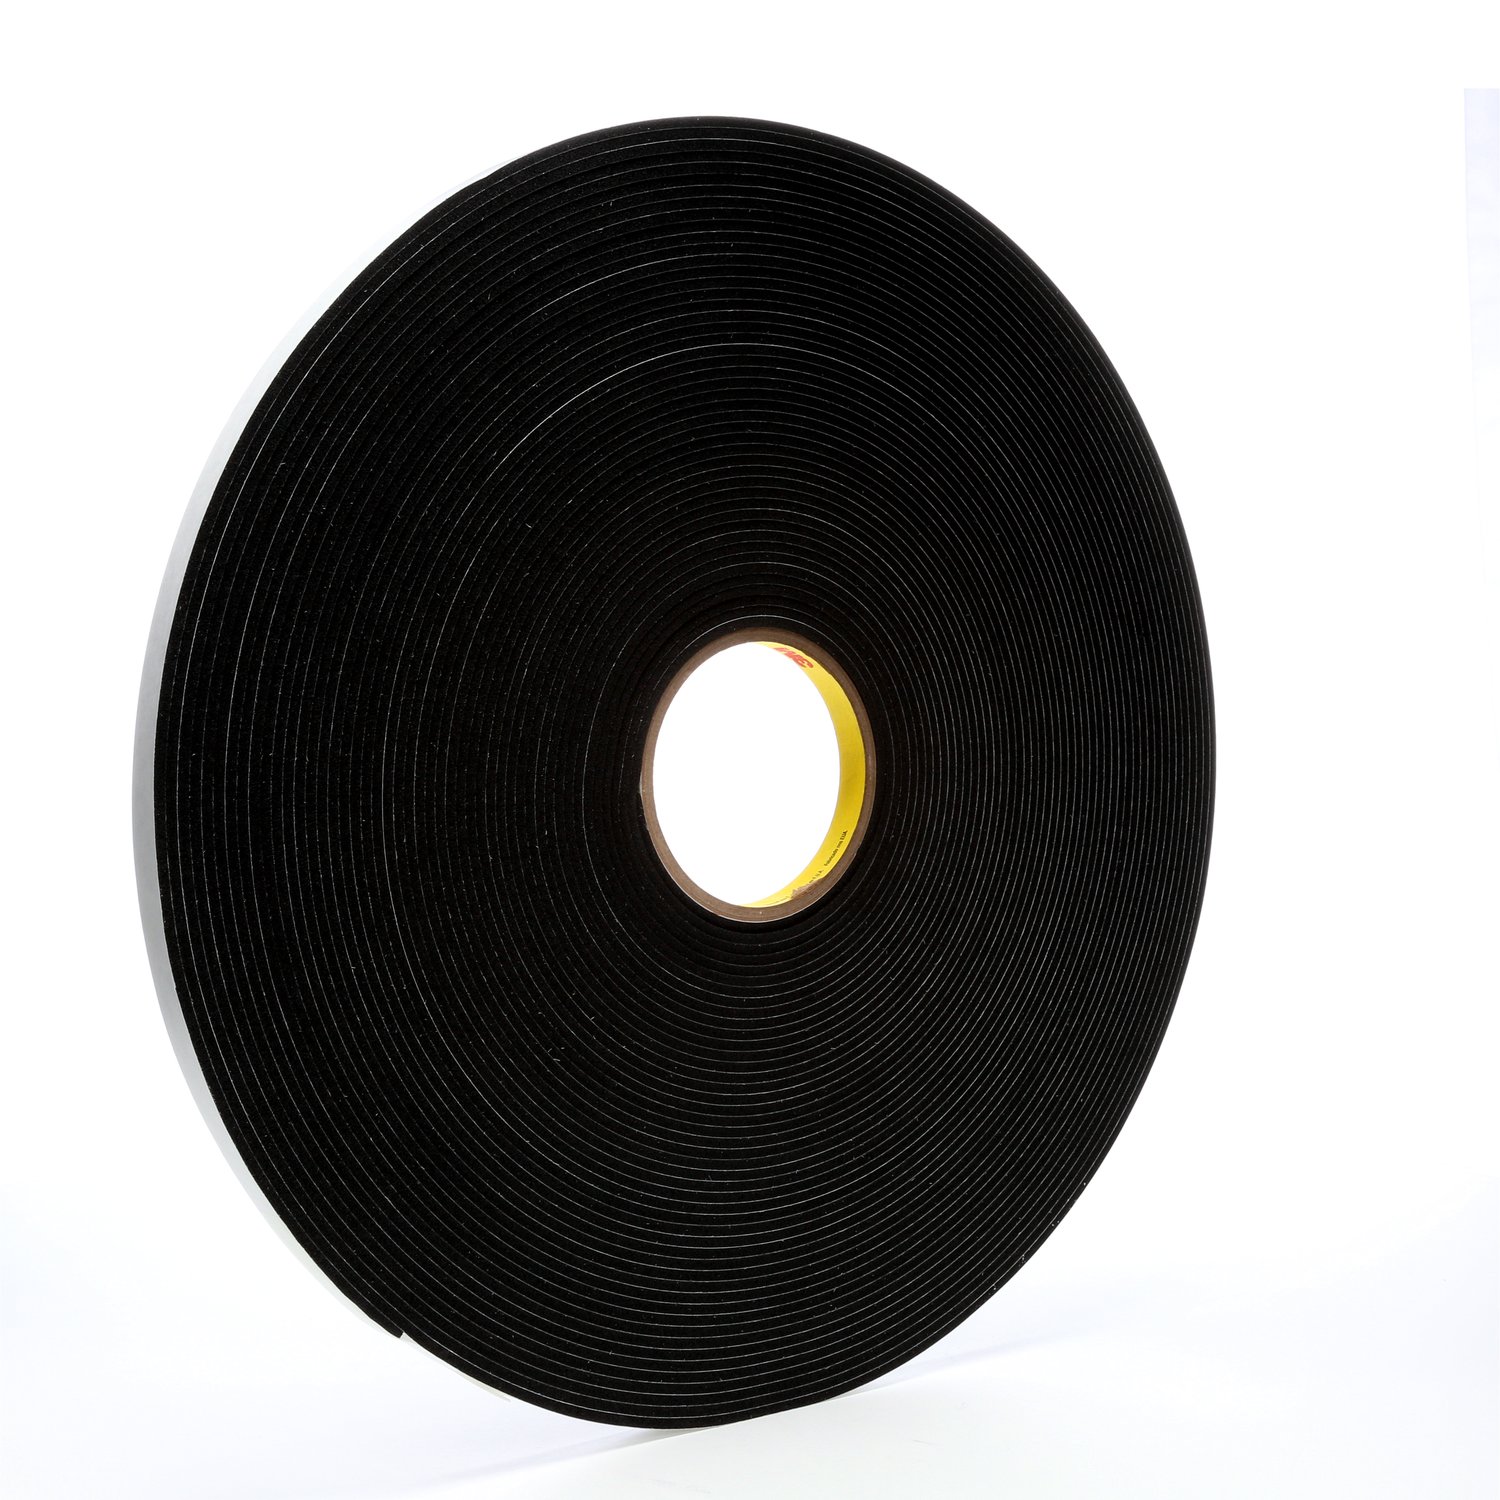 7000028881 - 3M Vinyl Foam Tape 4718, Black, 1/2 in x 36 yd, 125 mil, 18 rolls per
case